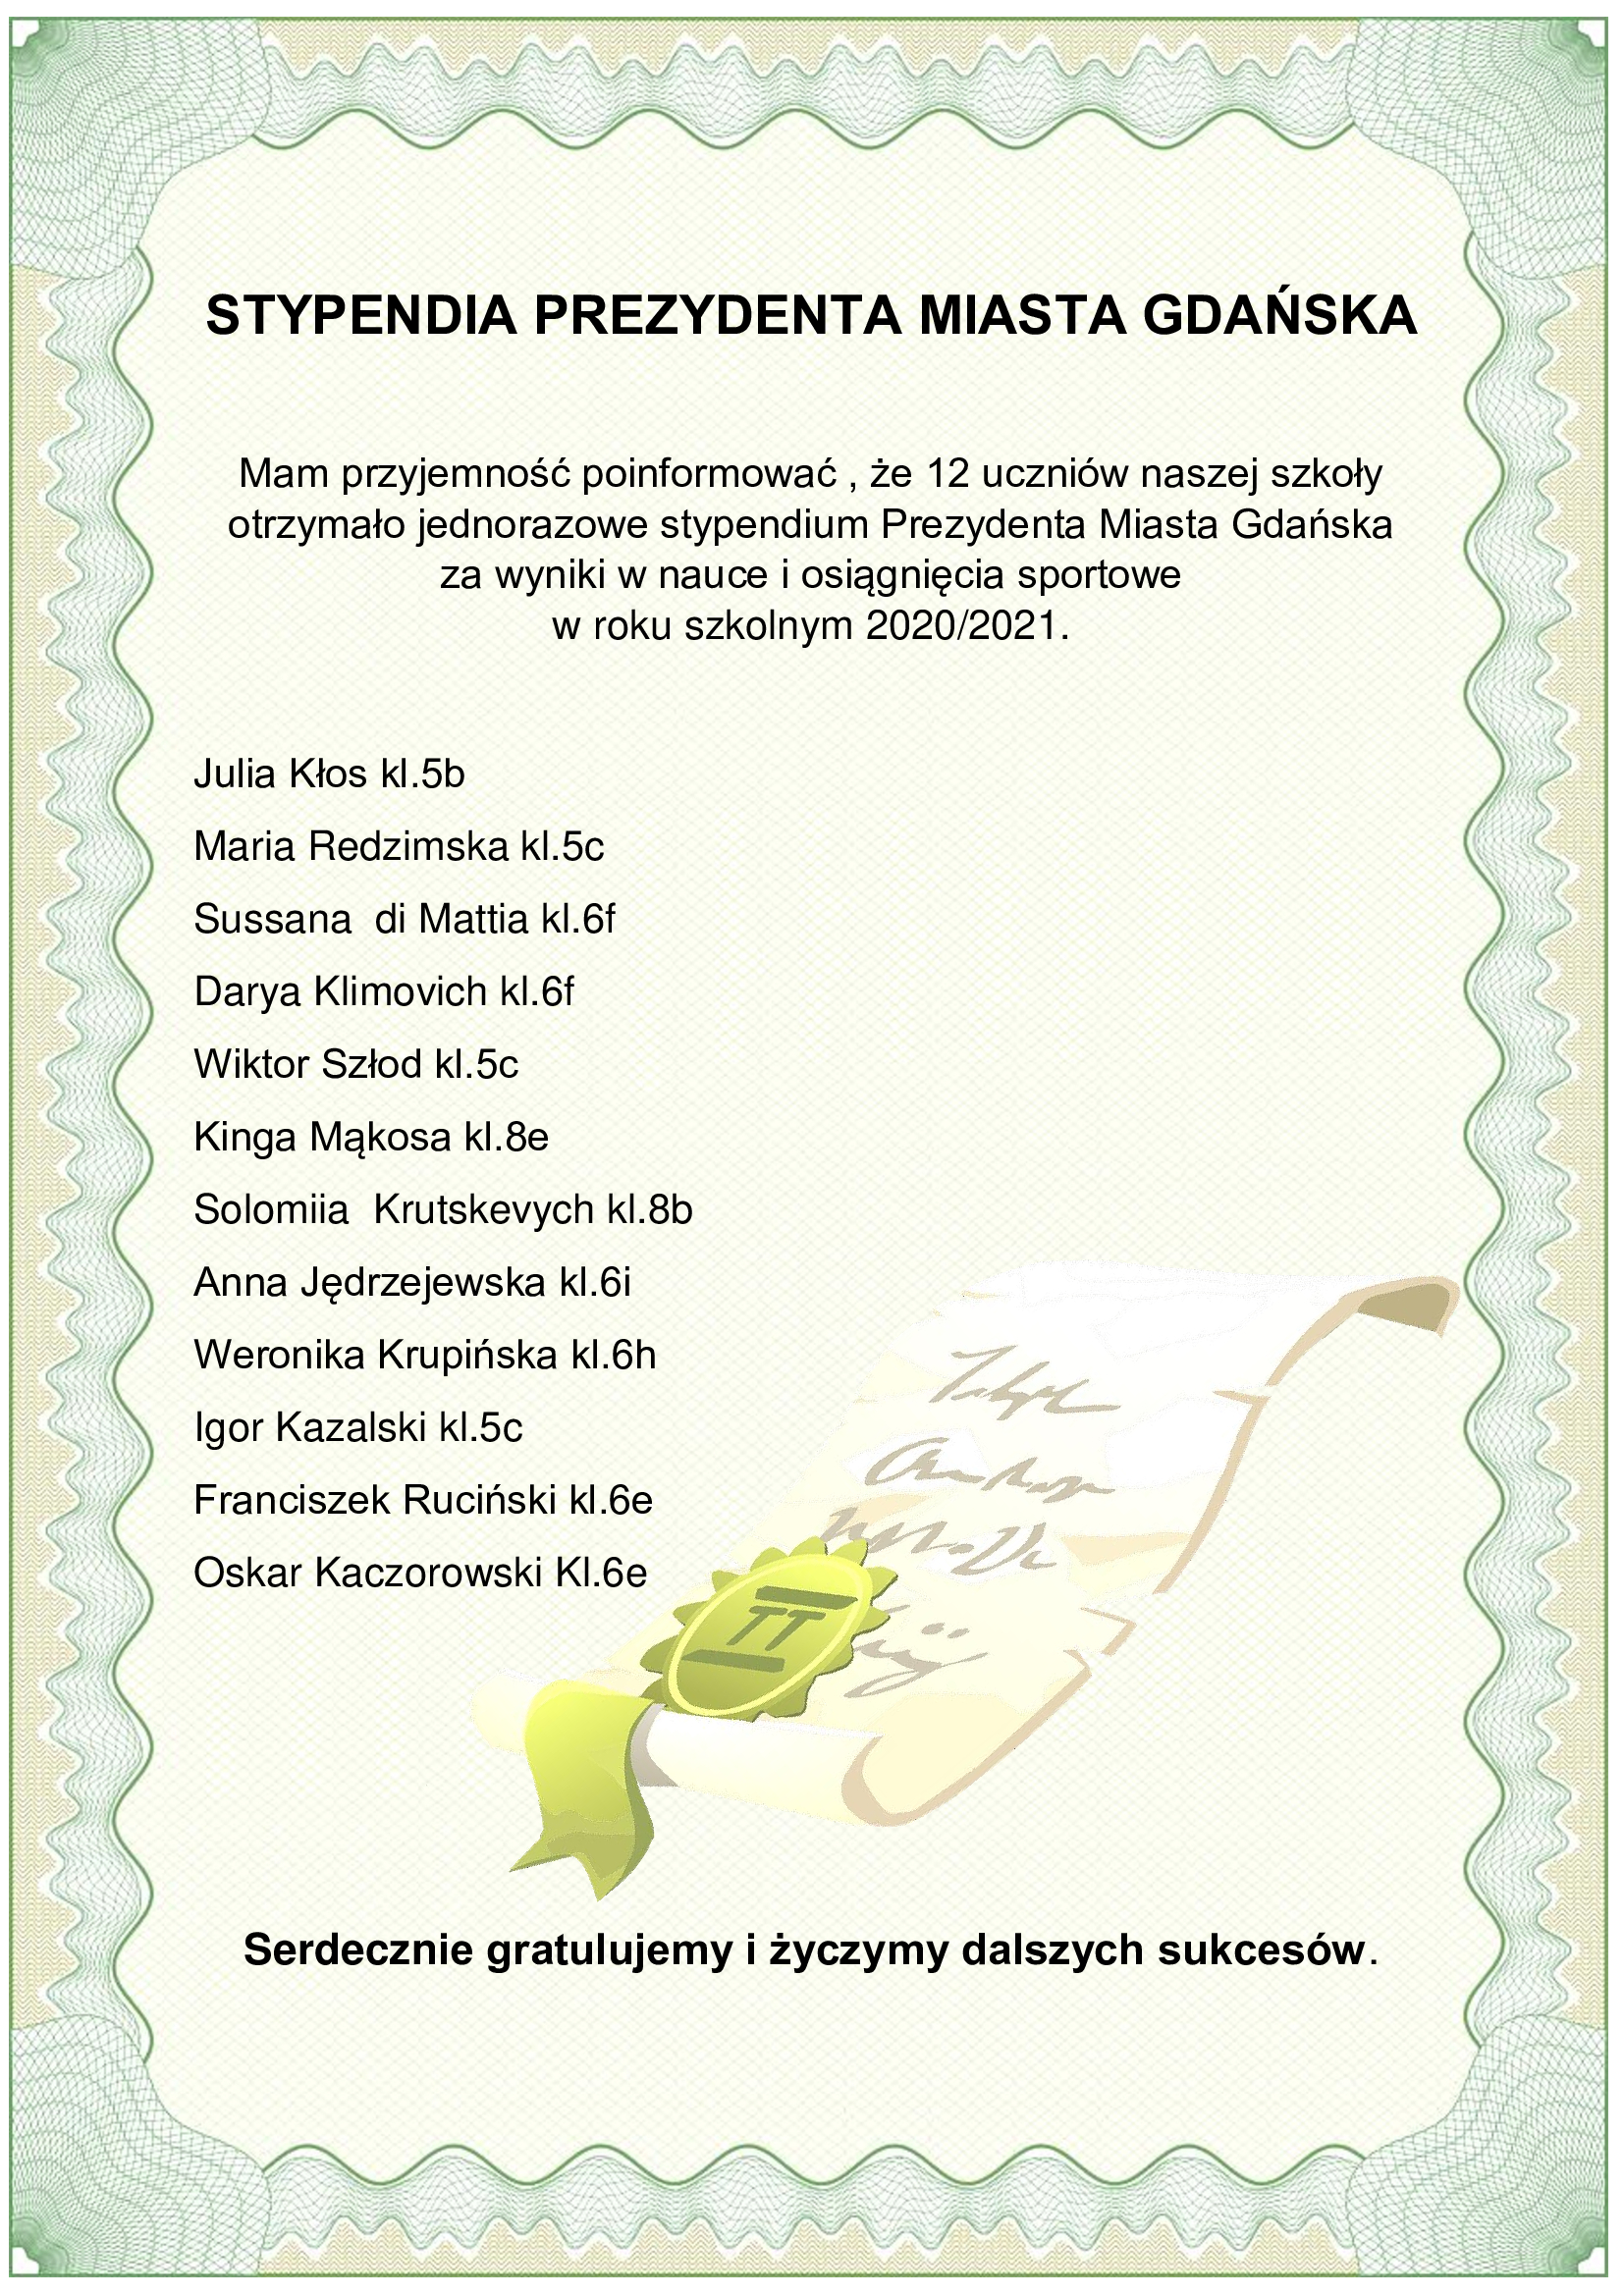 Grafika zawiera informacje zawarte w tekście na temat uczniów, którzy otrzymali stypednium Prezydenta Miasta Gdańska